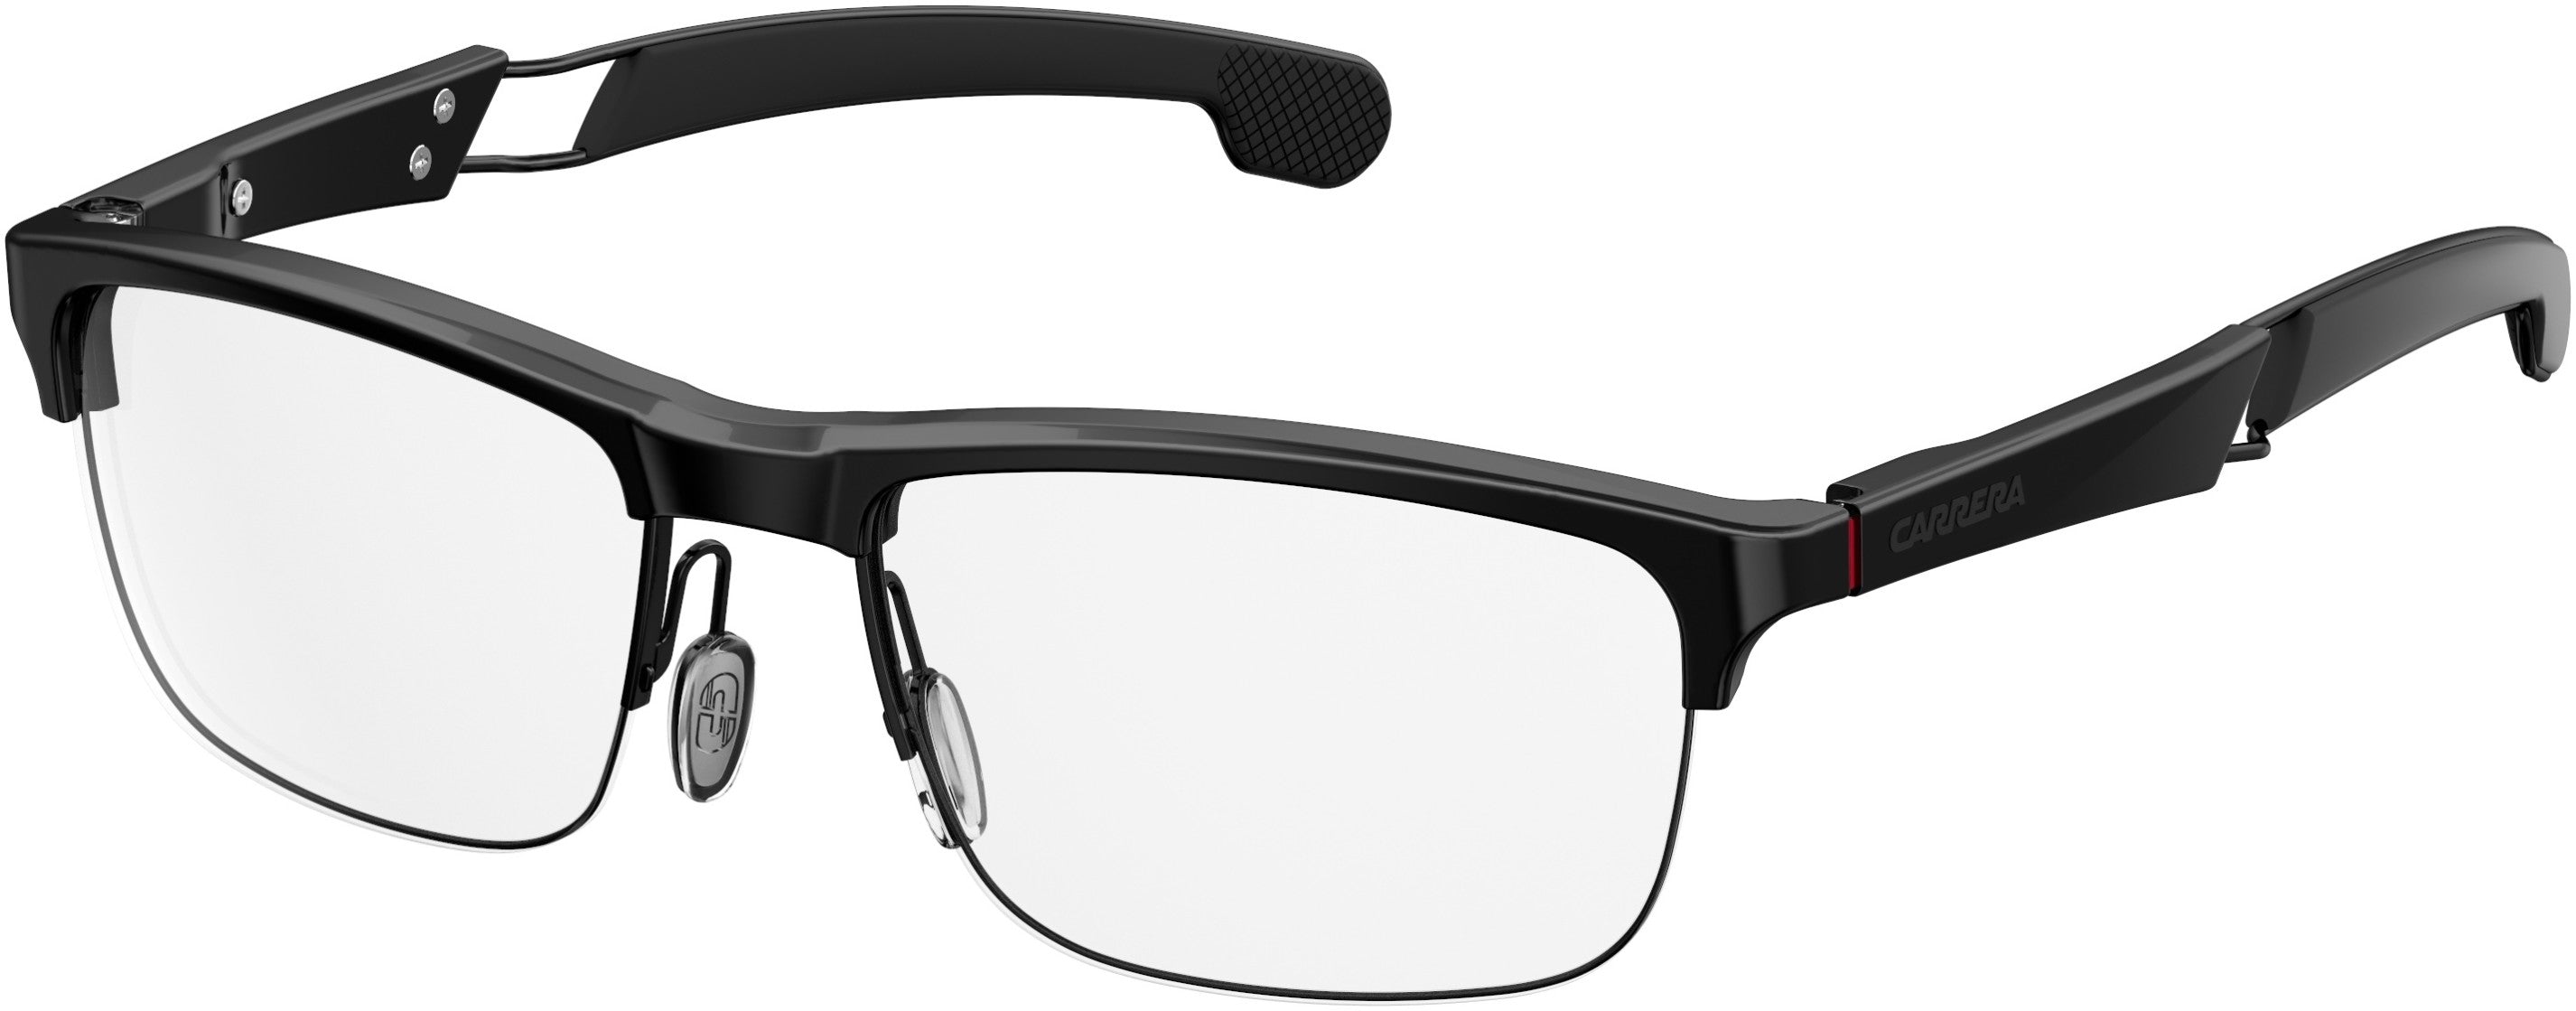  Carrera 4403/V Rectangular Eyeglasses 0807-0807  Black (00 Demo Lens)